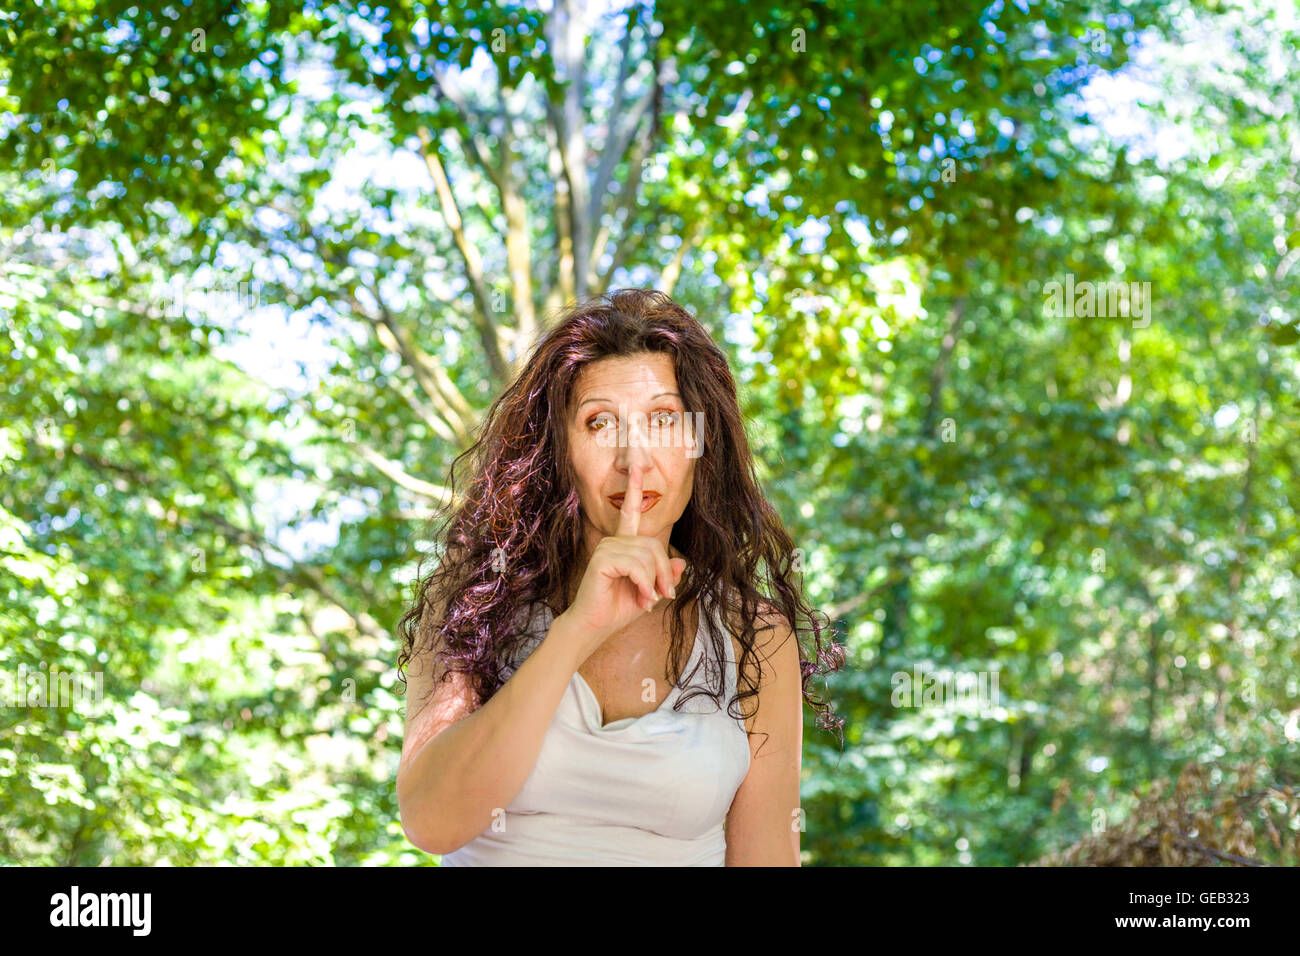 Femme mature chic en courbes, met l'index sur les lèvres pour demander le silence dans un jardin Banque D'Images